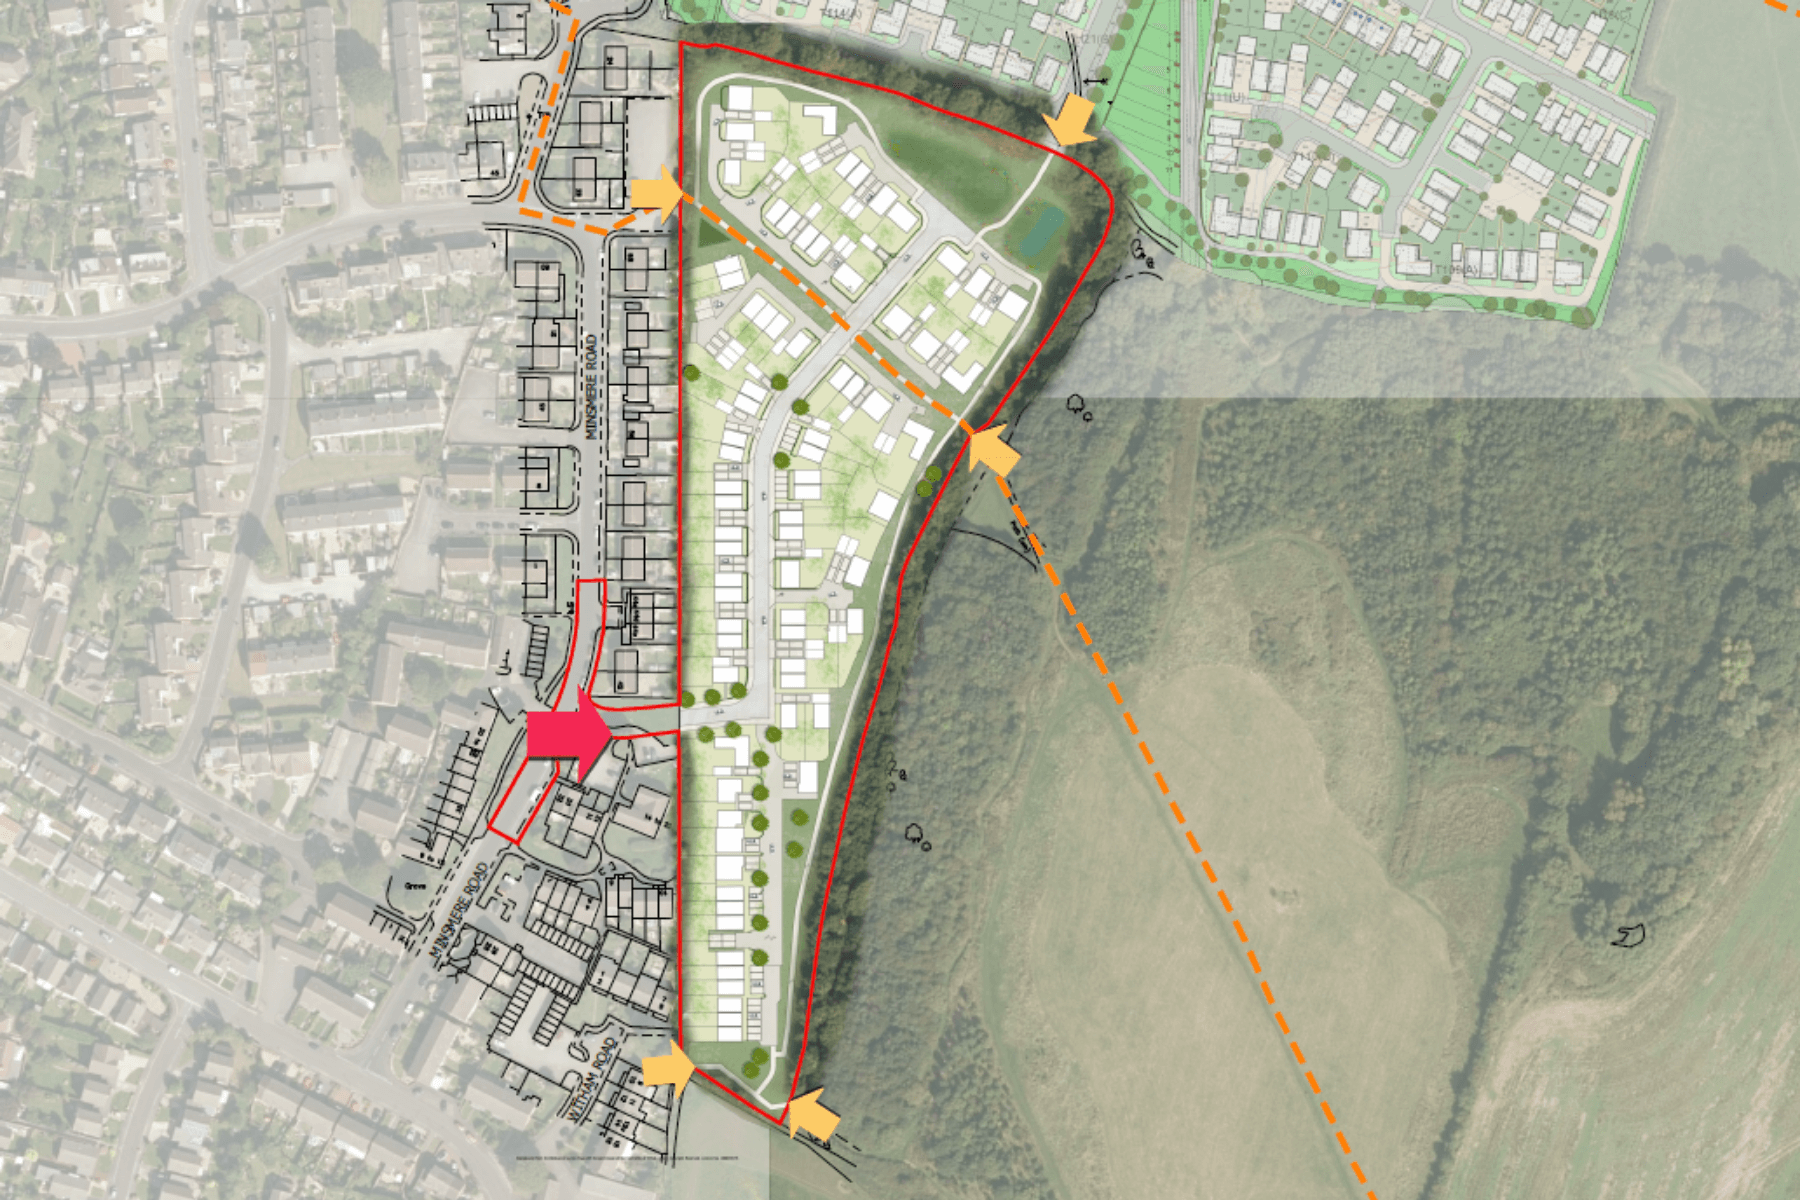 Plan of proposed site in Keynsham